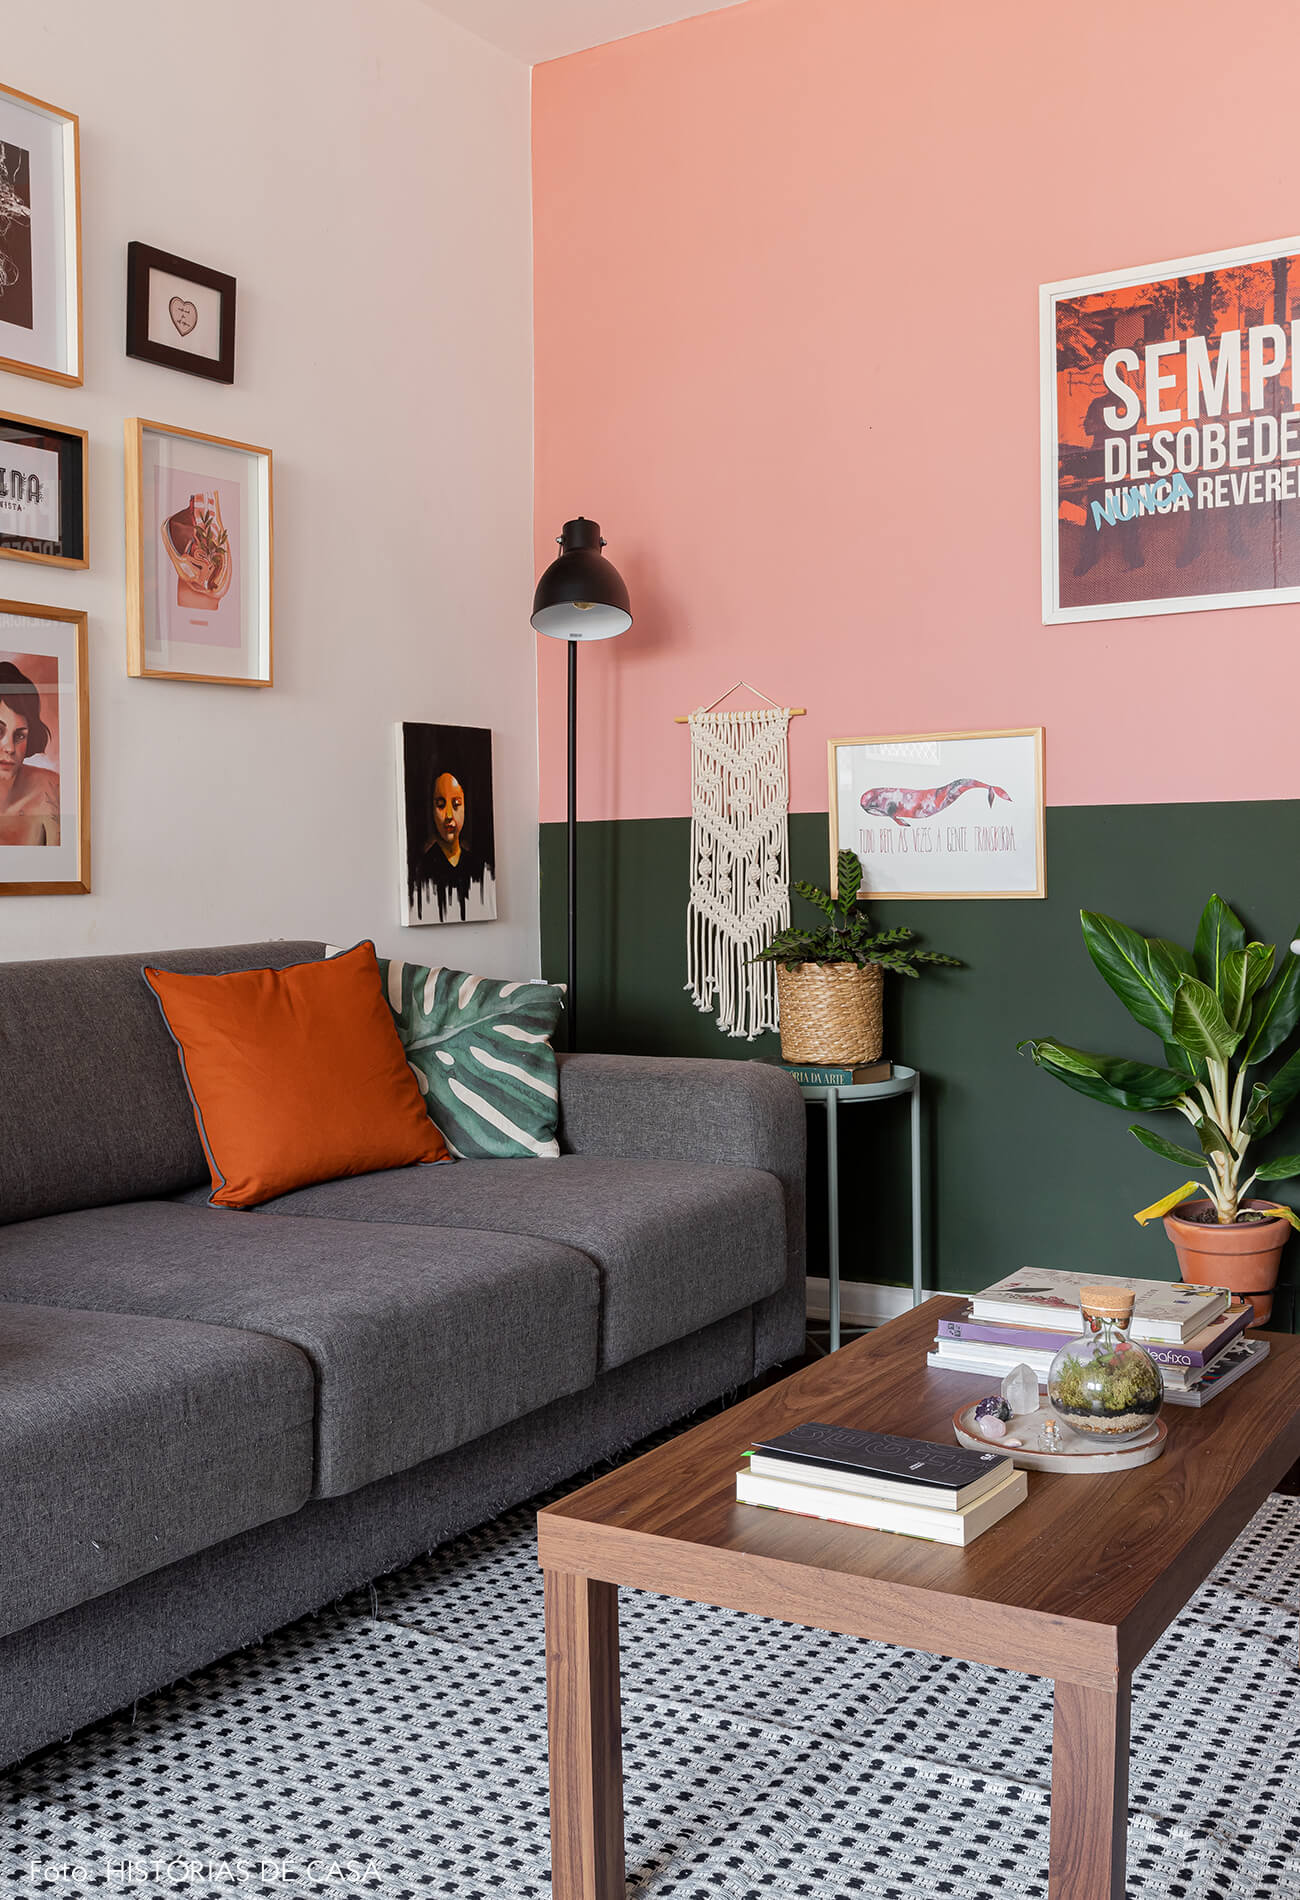 decoração-sala-com-parede-rosa-e-verde-com-quadros-e-plantas